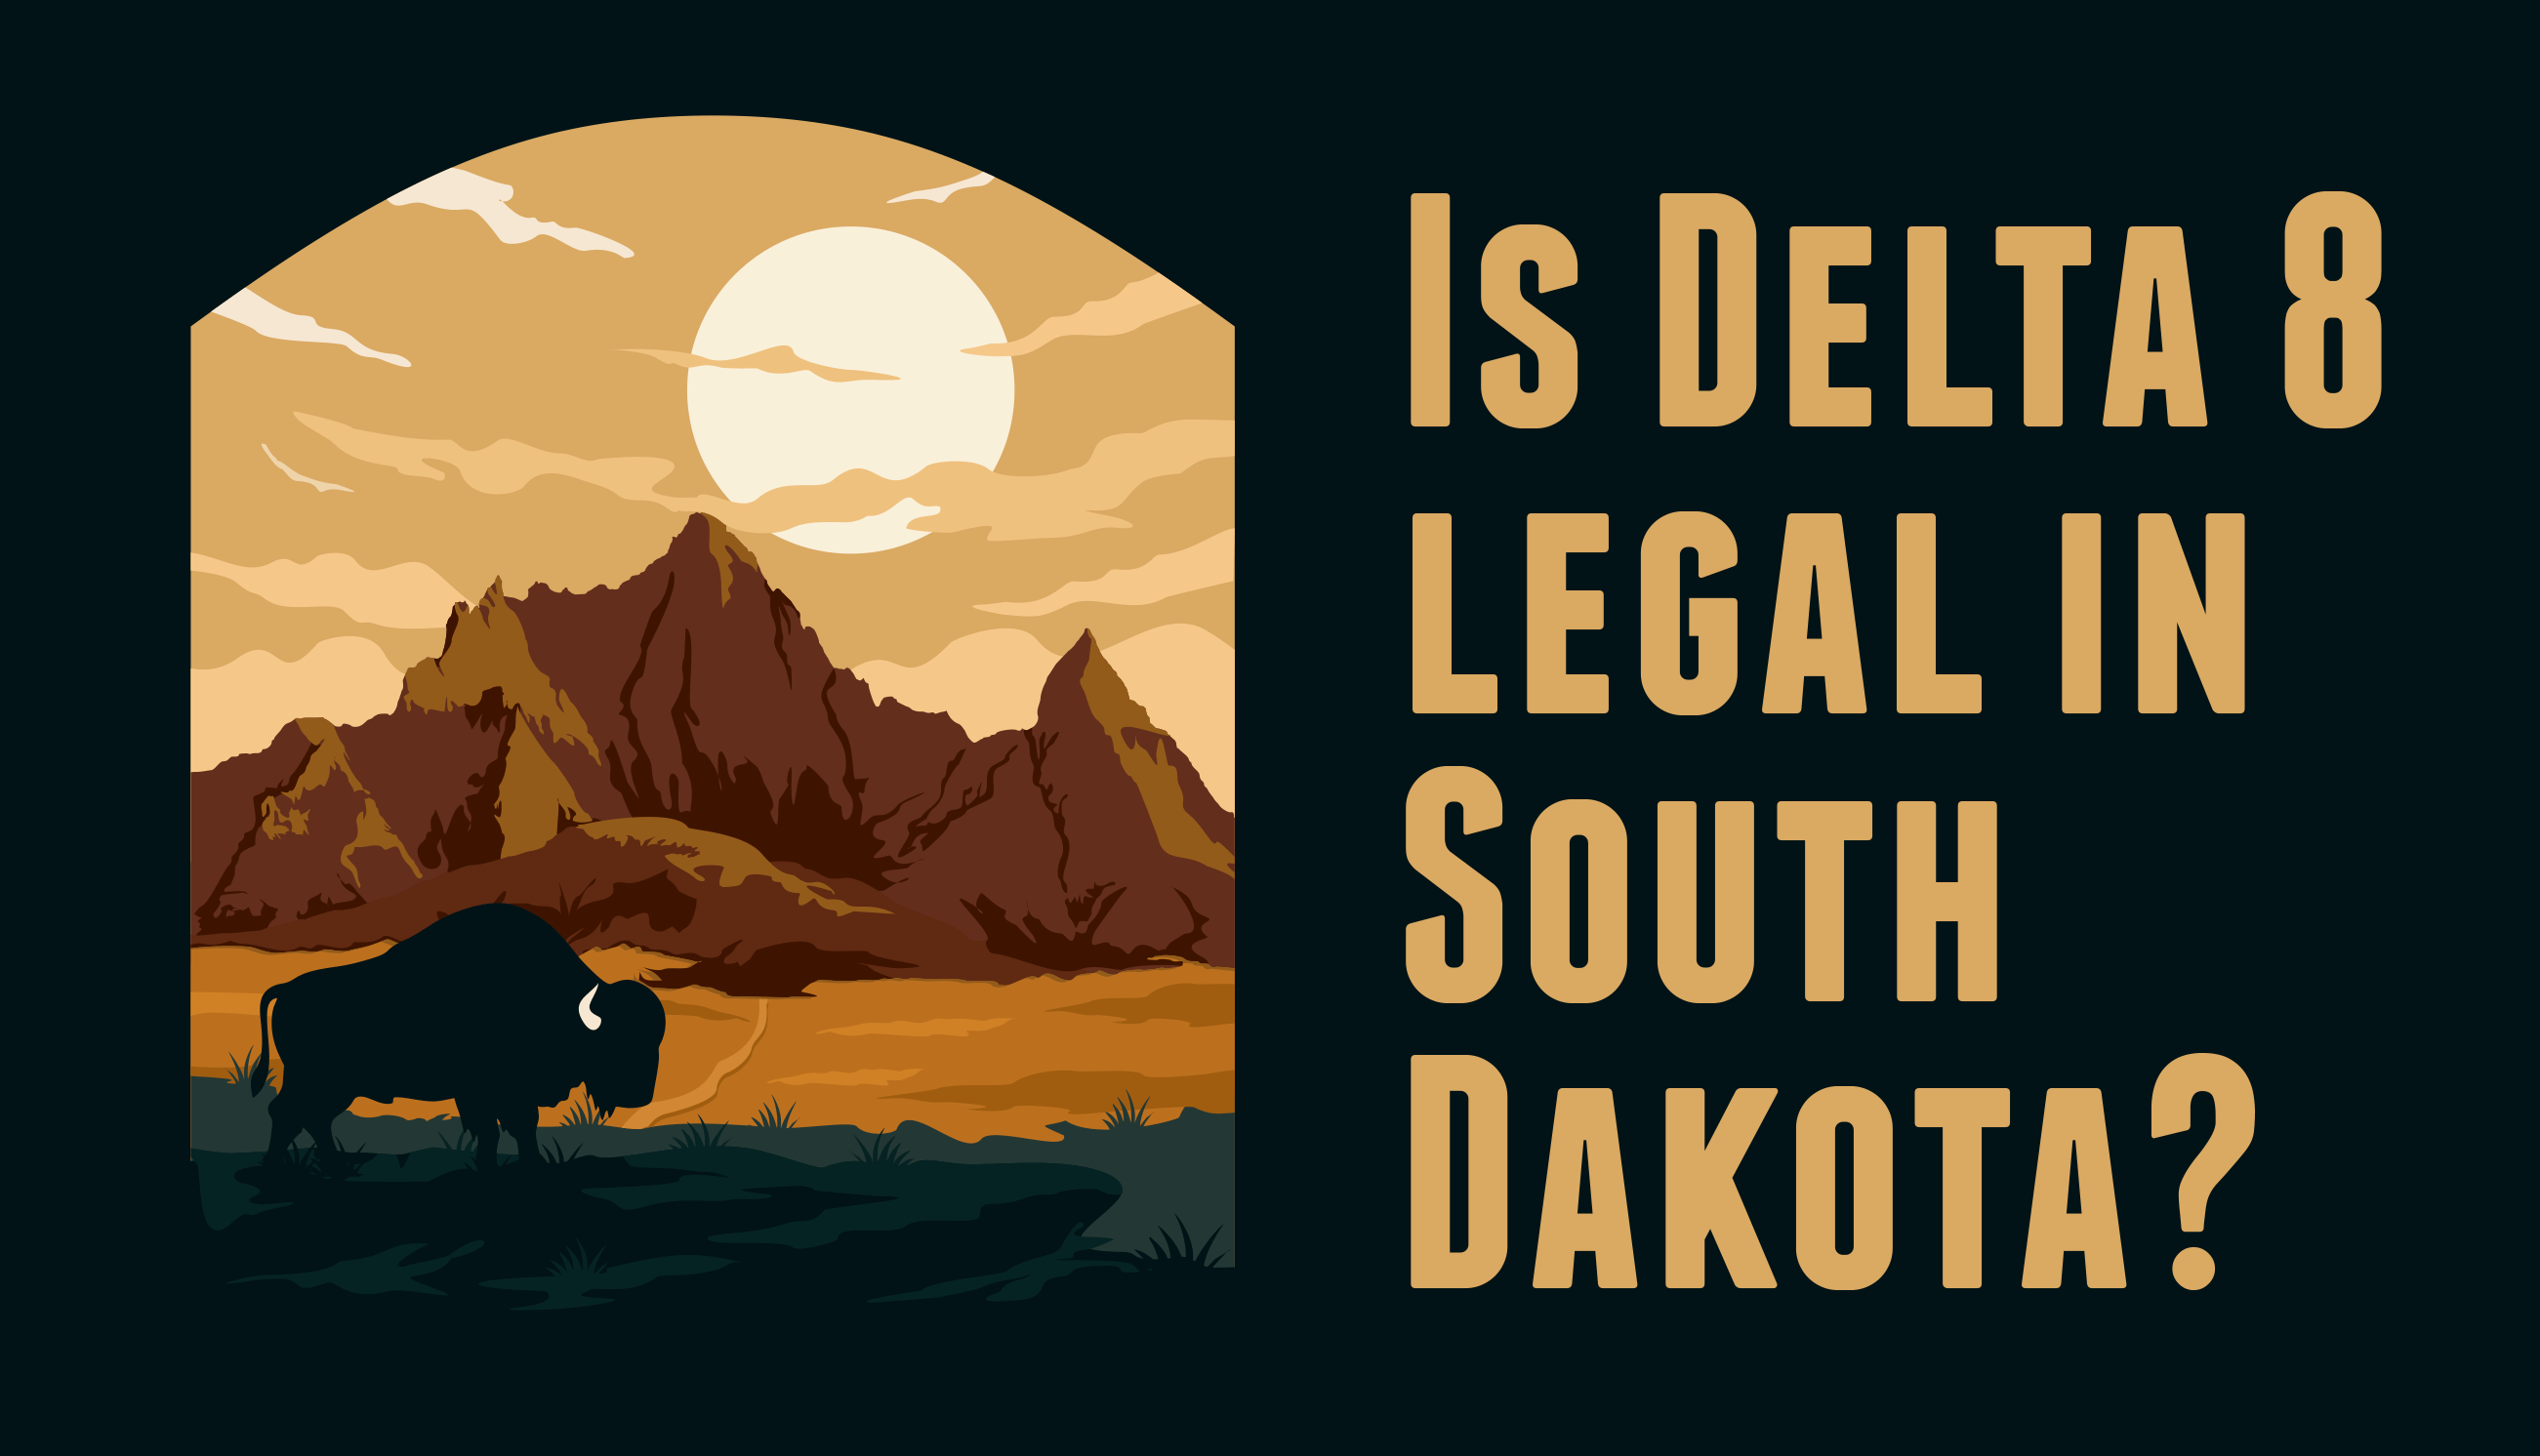 Is Delta 8 legal in South Dakota